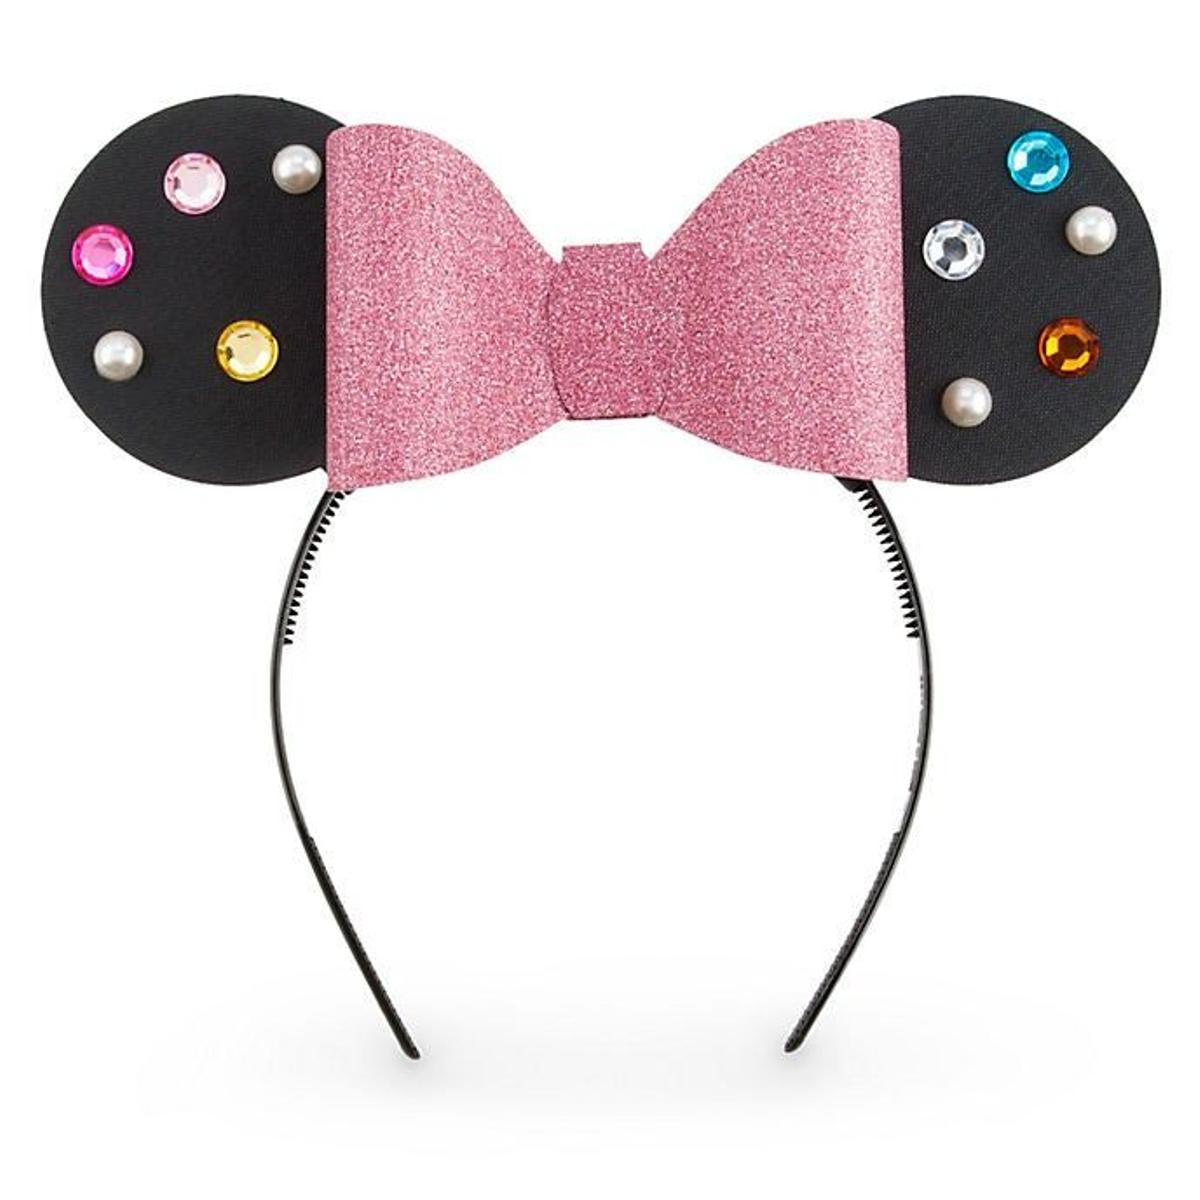 Kit para crear tus propias orejas de Minnie Mouse